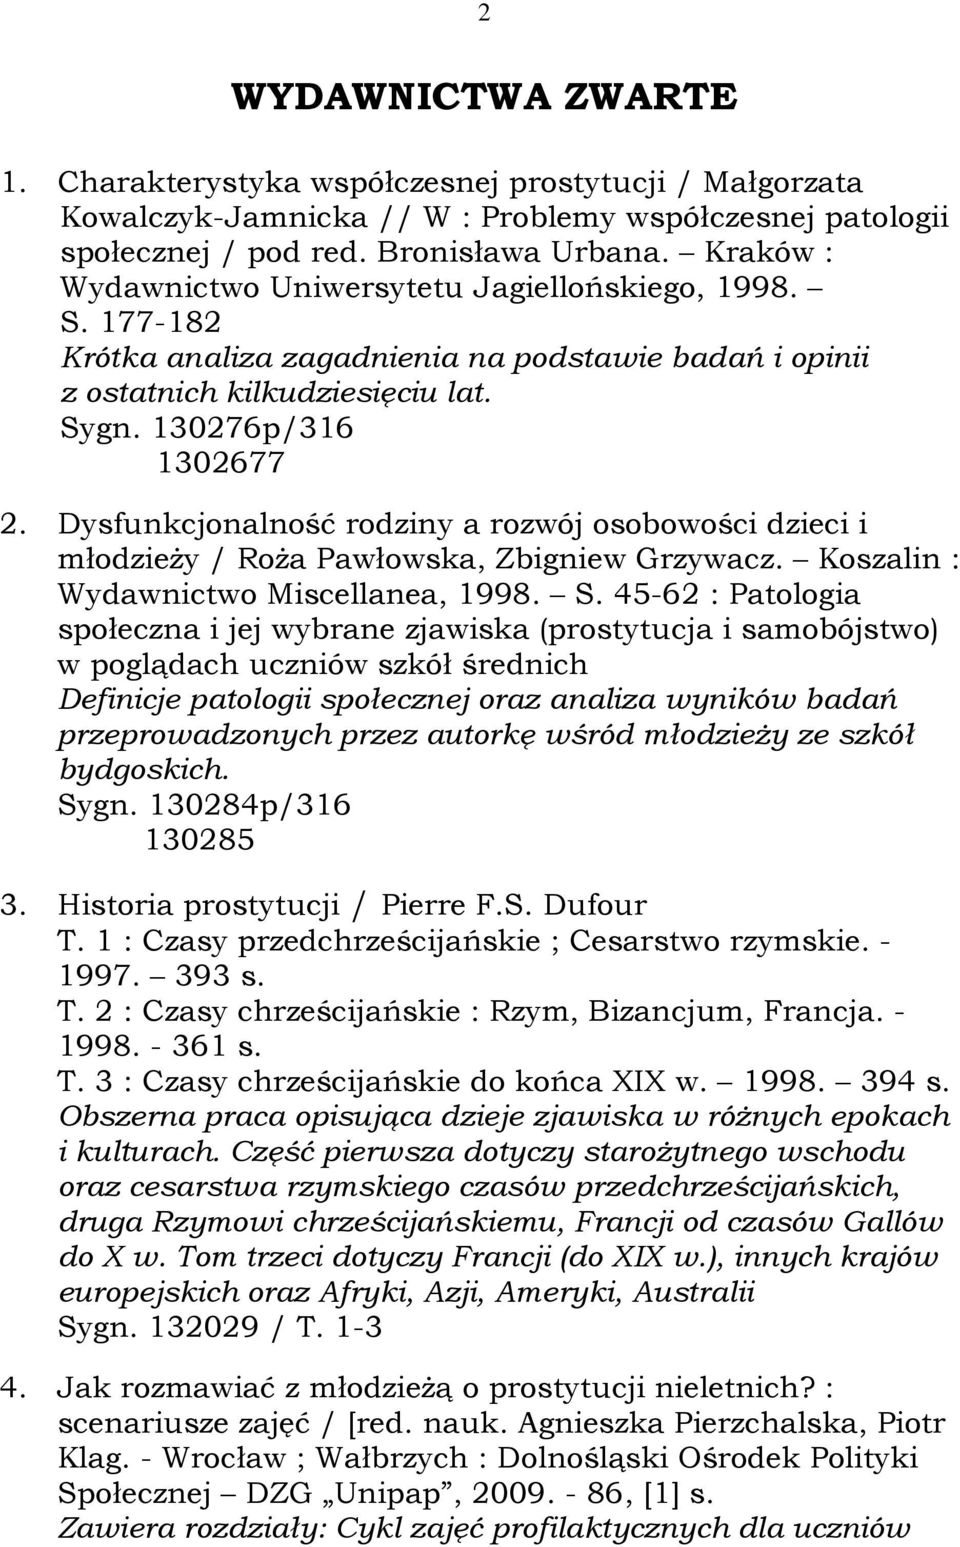 Dysfunkcjonalność rodziny a rozwój osobowości dzieci i młodzieży / Roża Pawłowska, Zbigniew Grzywacz. Koszalin : Wydawnictwo Miscellanea, 1998. S.